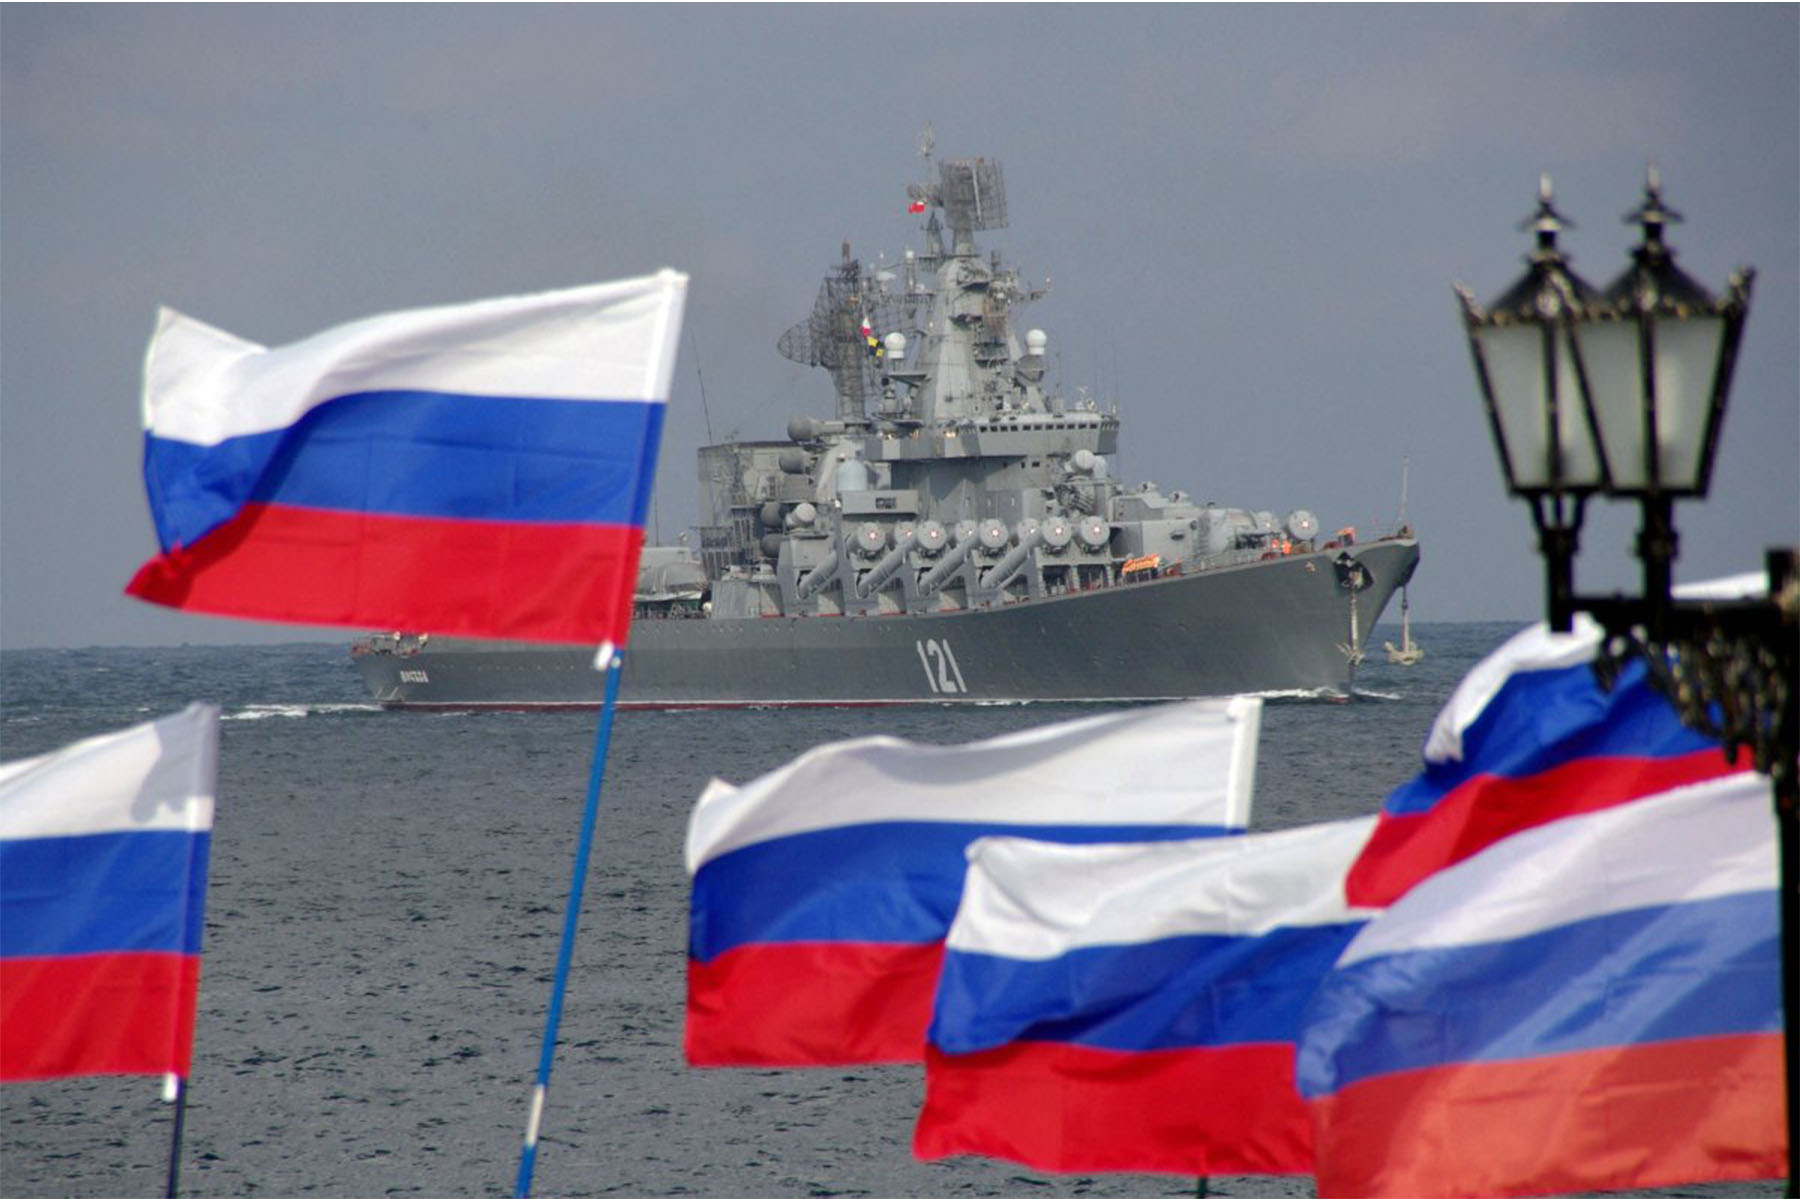 اوکراین می گوید که دو فروند کشتی روسی در نزدیکی کریمه مورد هدف قرار گرفتند